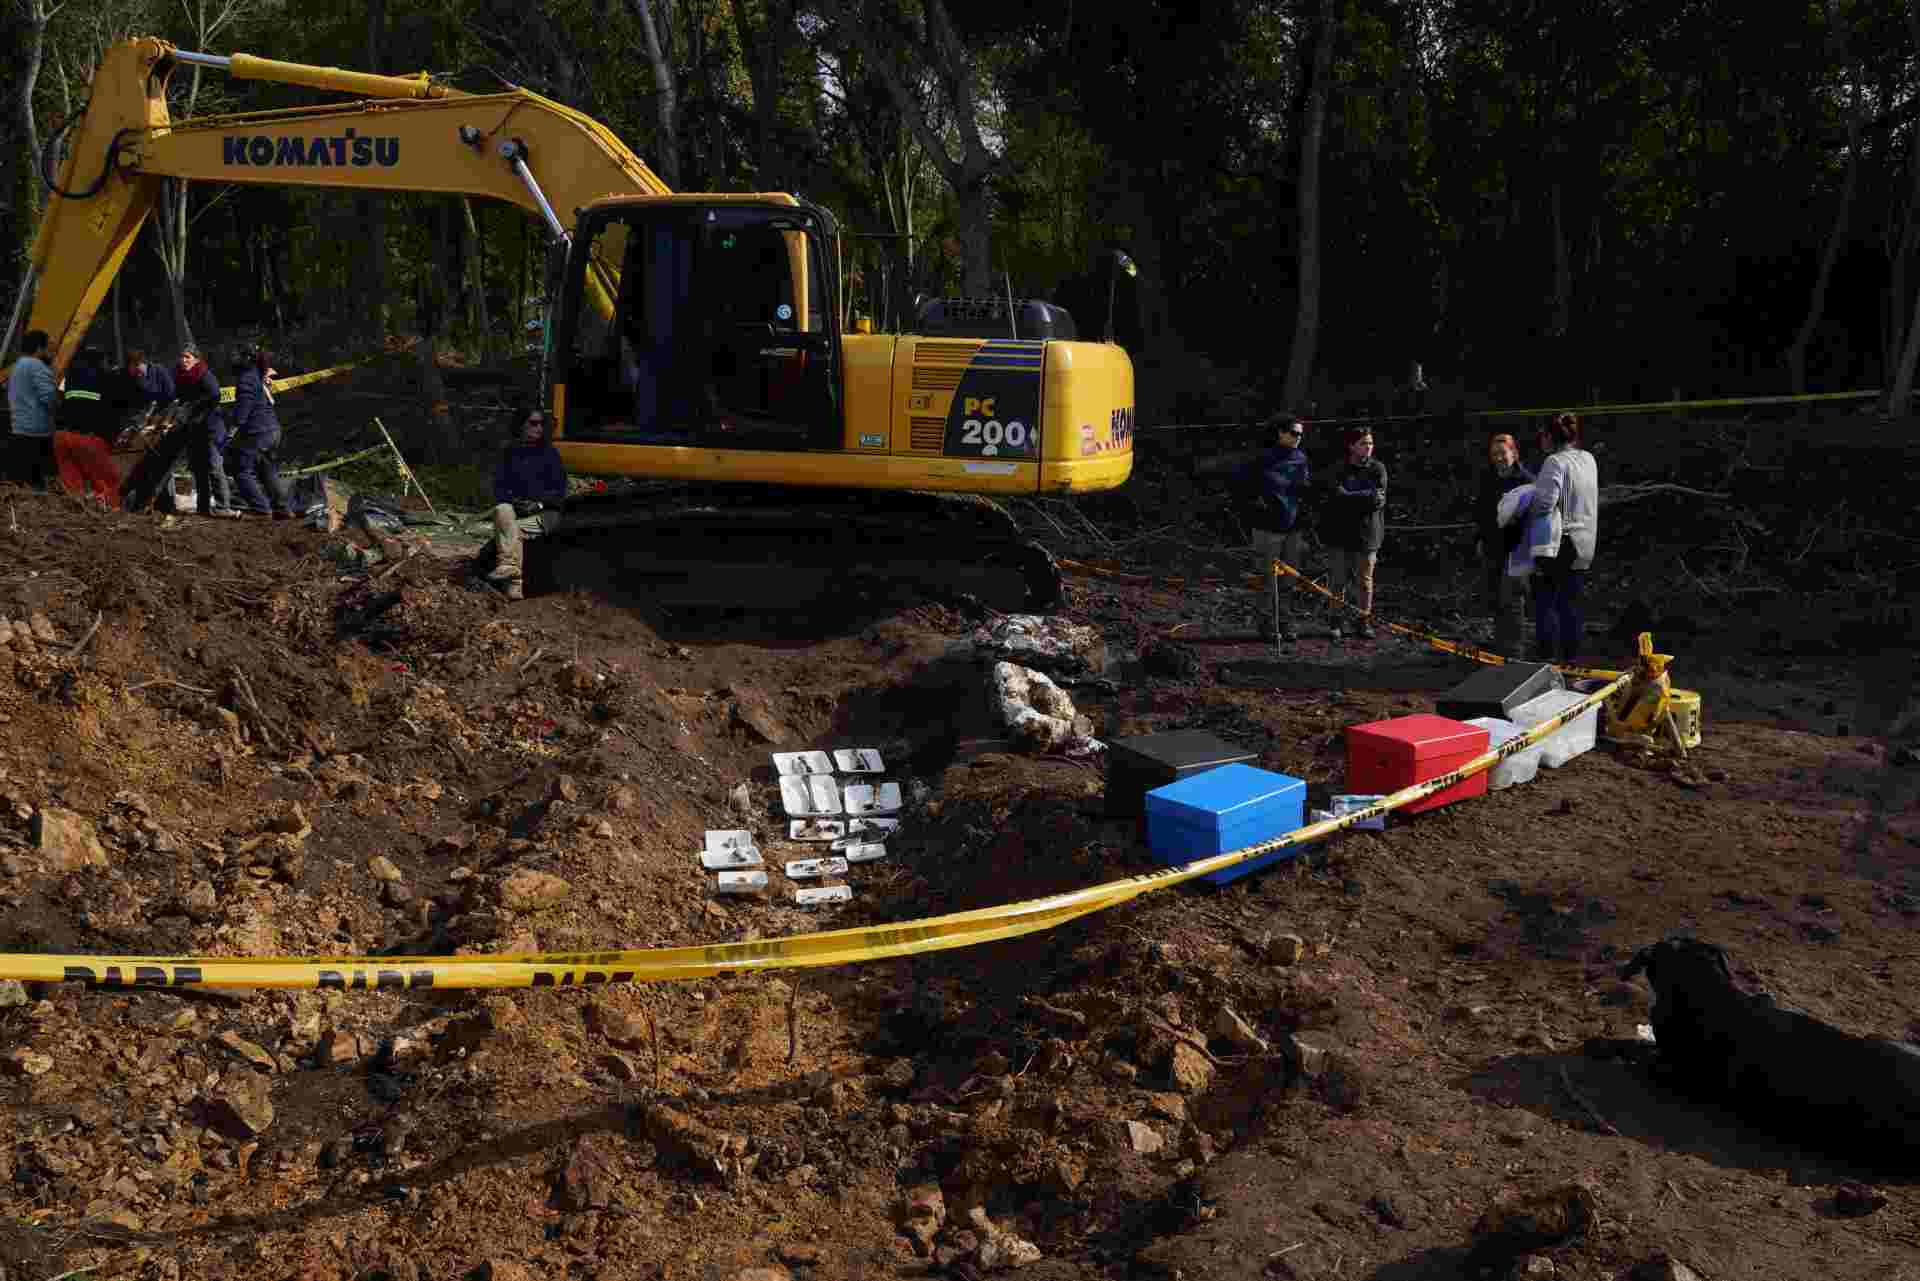 Hallan los restos humanos de una persona desaparecida durante la dictadura en un batallón del Ejército de Uruguay